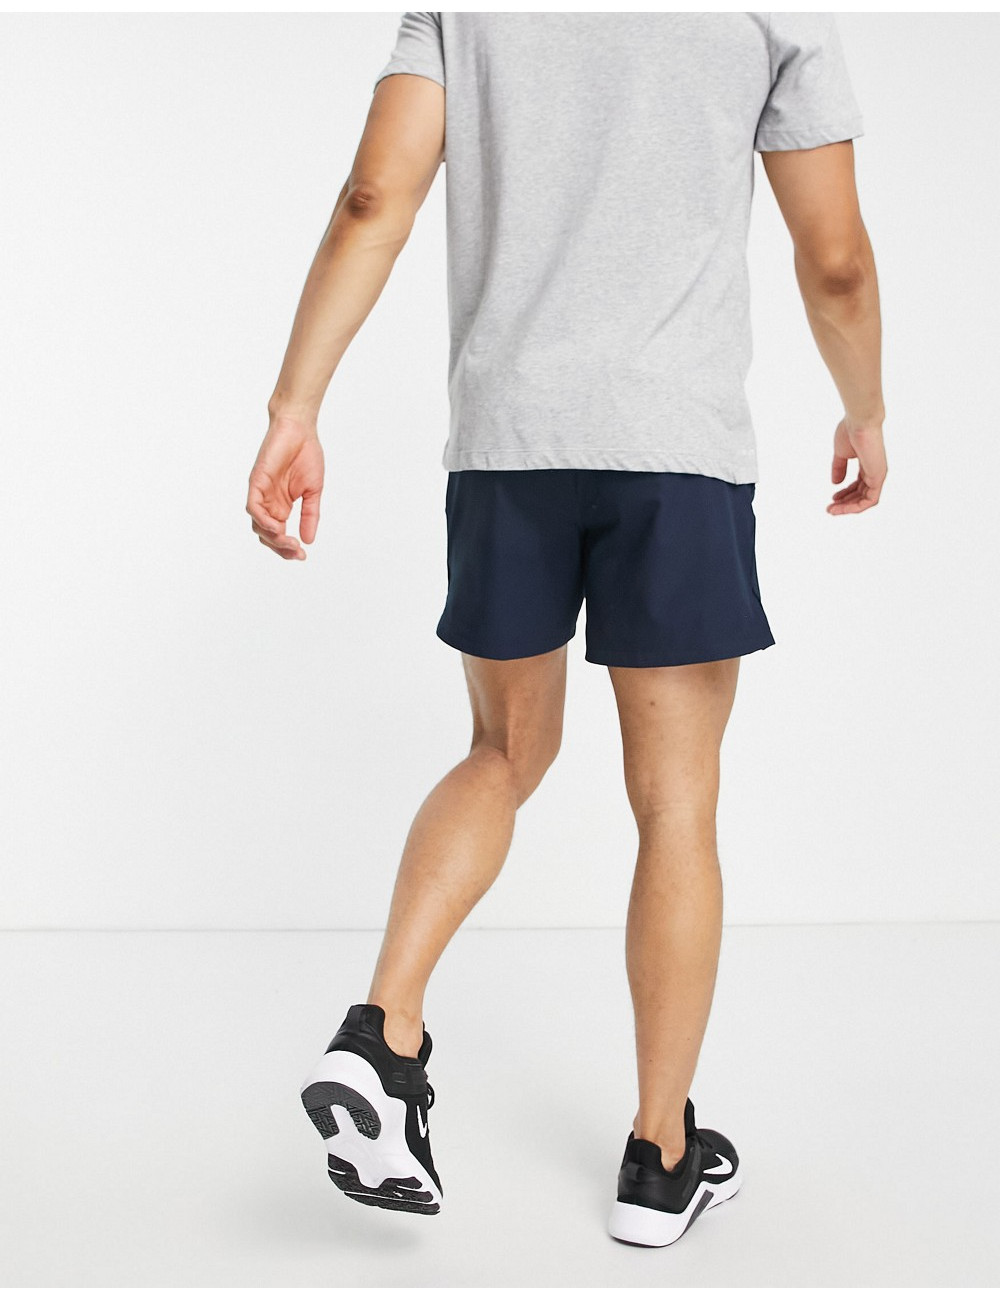 Nike Pro Training shorts in...